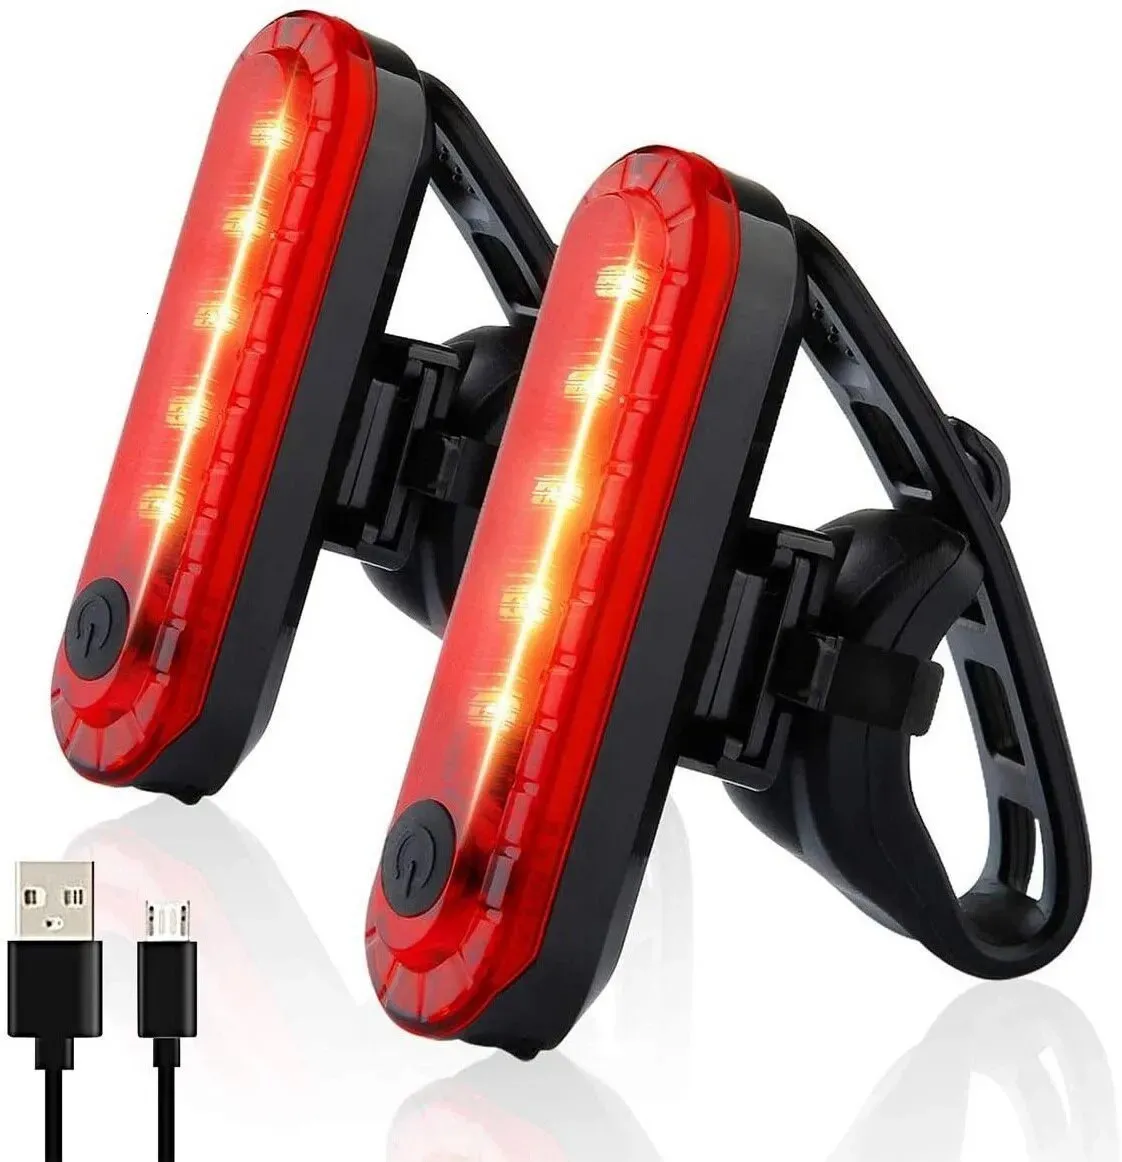 Luci per bici Luci posteriori per bicicletta Luci posteriori rosse super luminose con ricarica USB adatte per biciclette facili da installare e convenienti per la sicurezza della bicicletta 231027